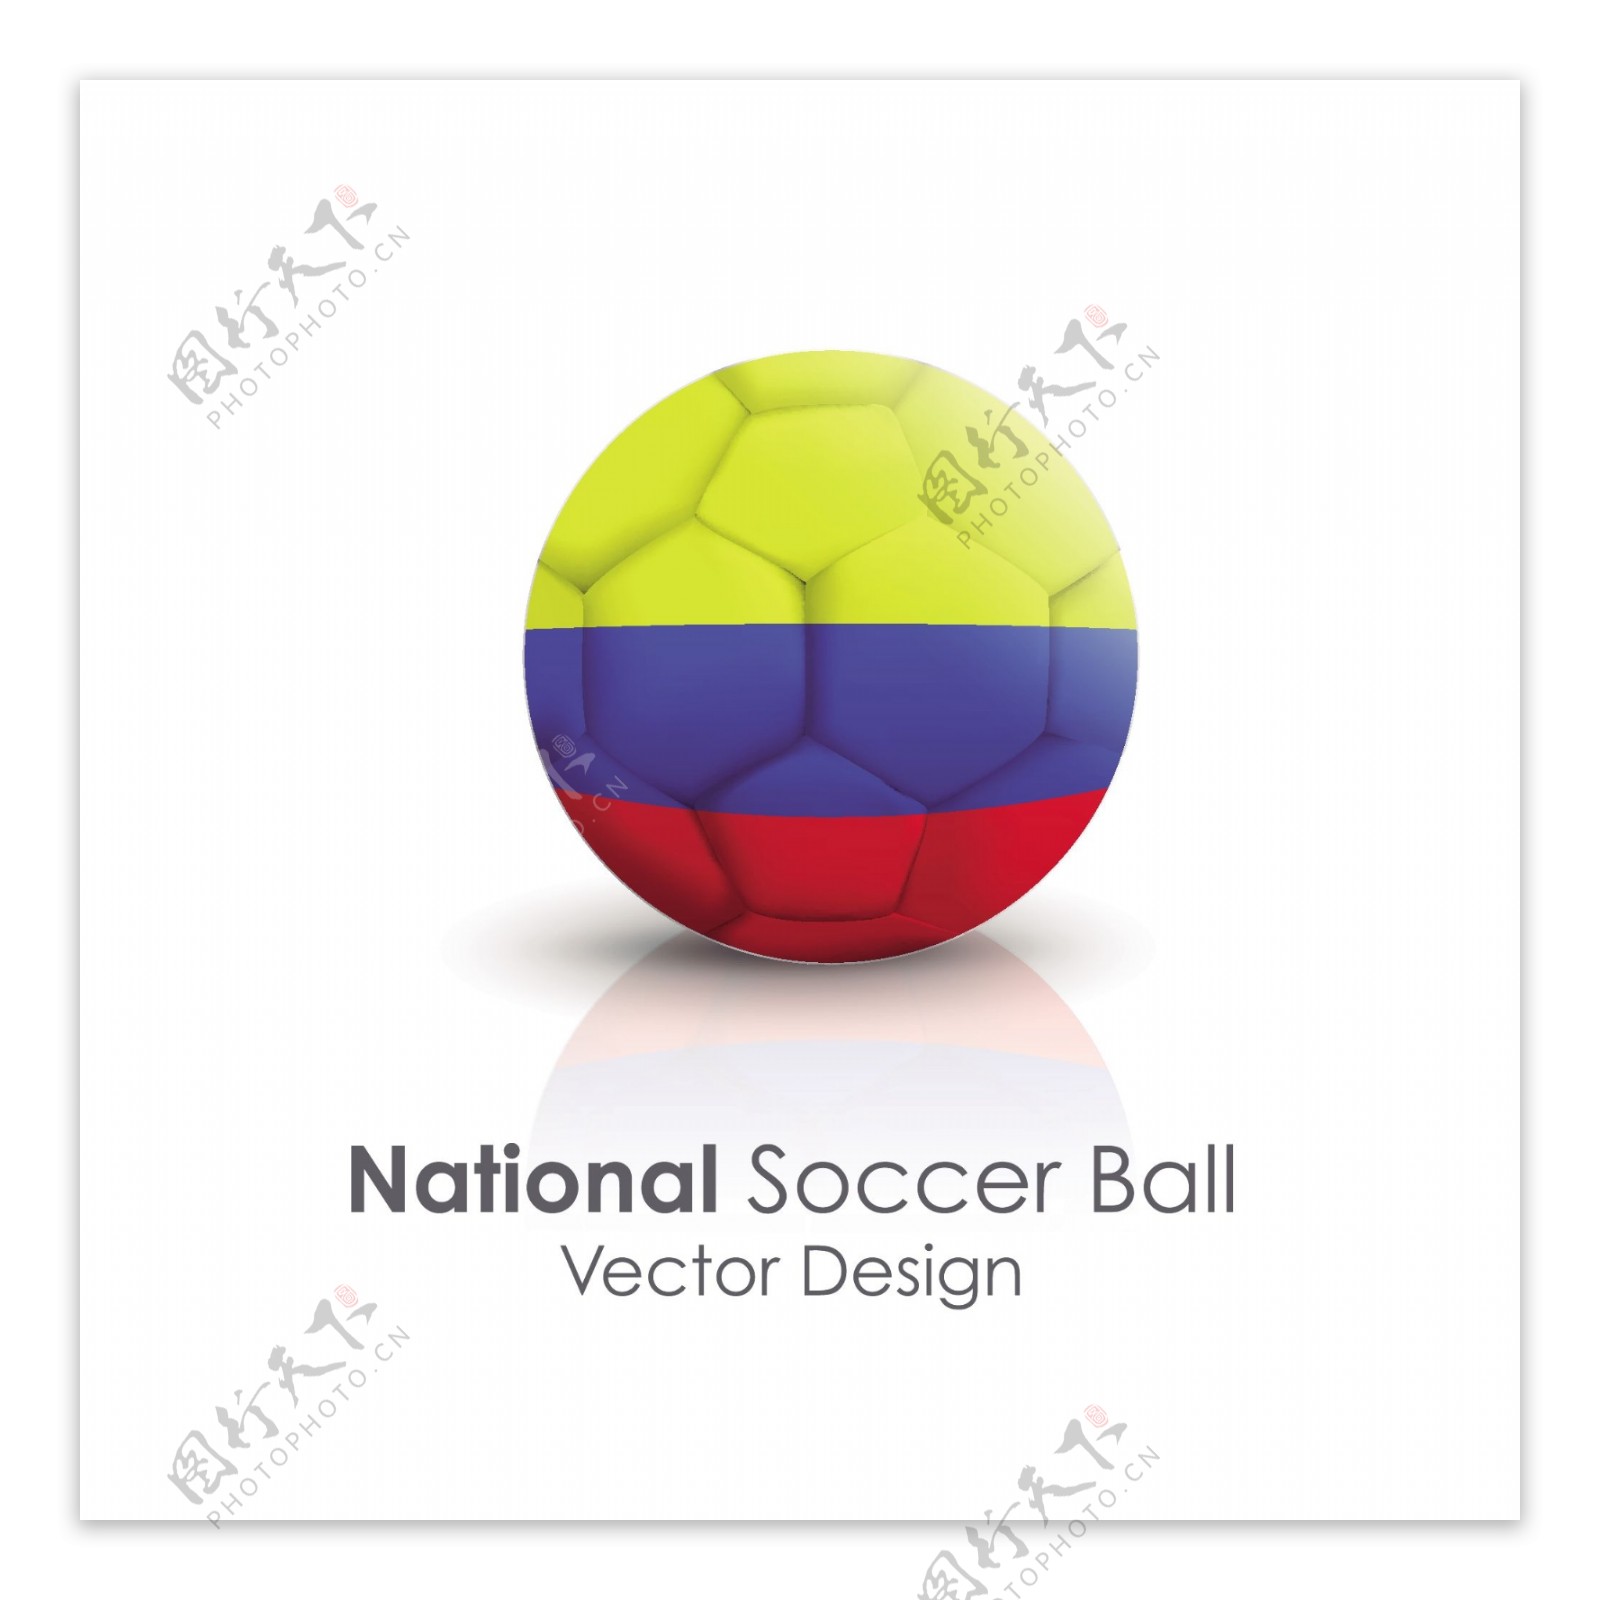 哥伦比亚国旗足球贴图矢量素材